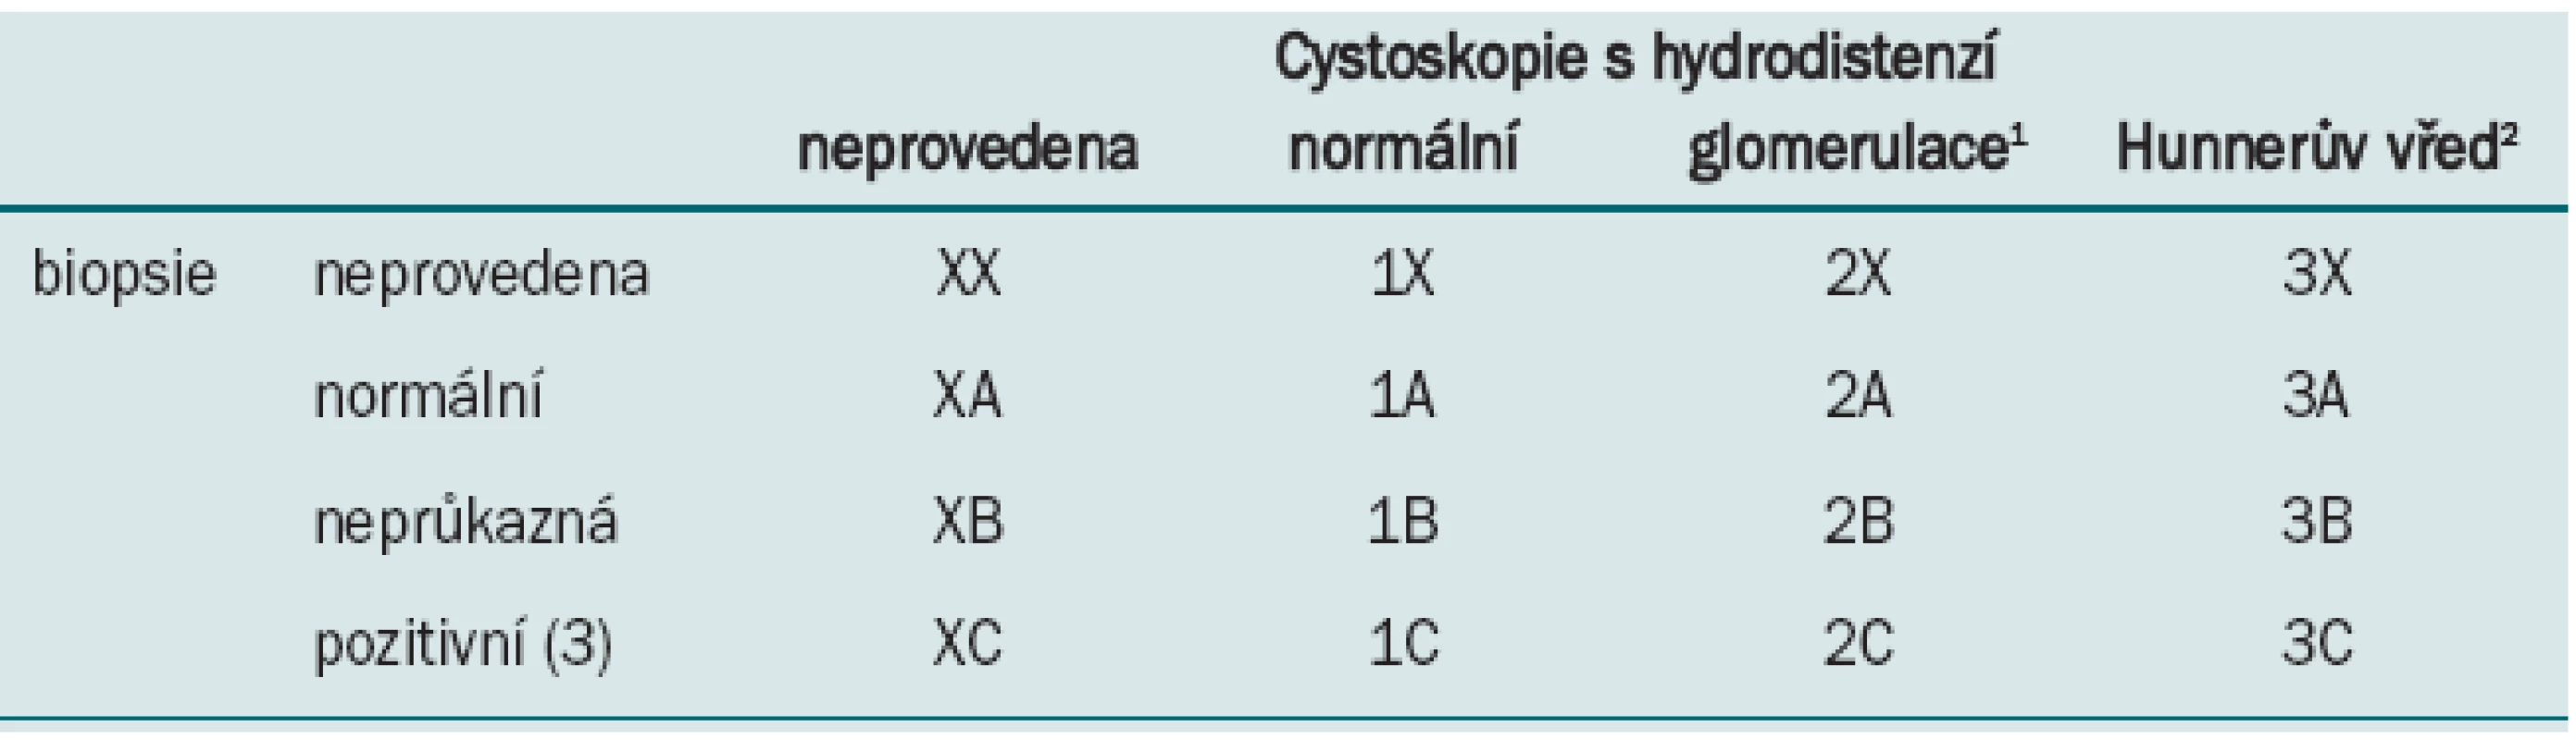 van de Merwe JP, Nordling J, Bouchelouche P et al. Diagnostická kritéria, klasifikace a nomenklatura pro syndrom bolestivého močového měchýře/intersticiální cystitidu: návrh ESSIC. Eur Urol 2008; 53: 60.&lt;br&gt;
&lt;i&gt;&lt;sup&gt;1&lt;/sup&gt;cystoskopie: glomerulace II-III grade
&lt;sup&gt;2&lt;/sup&gt;s glomerulací nebo bez ní
&lt;sup&gt;3&lt;/sup&gt;histologie prokáže přítomnost zánětlivých infiltrátů a/nebo mastocytózu detruzoru a/nebo granulační tkáň a/nebo
intrafascikulární fibrózu&lt;/i&gt;